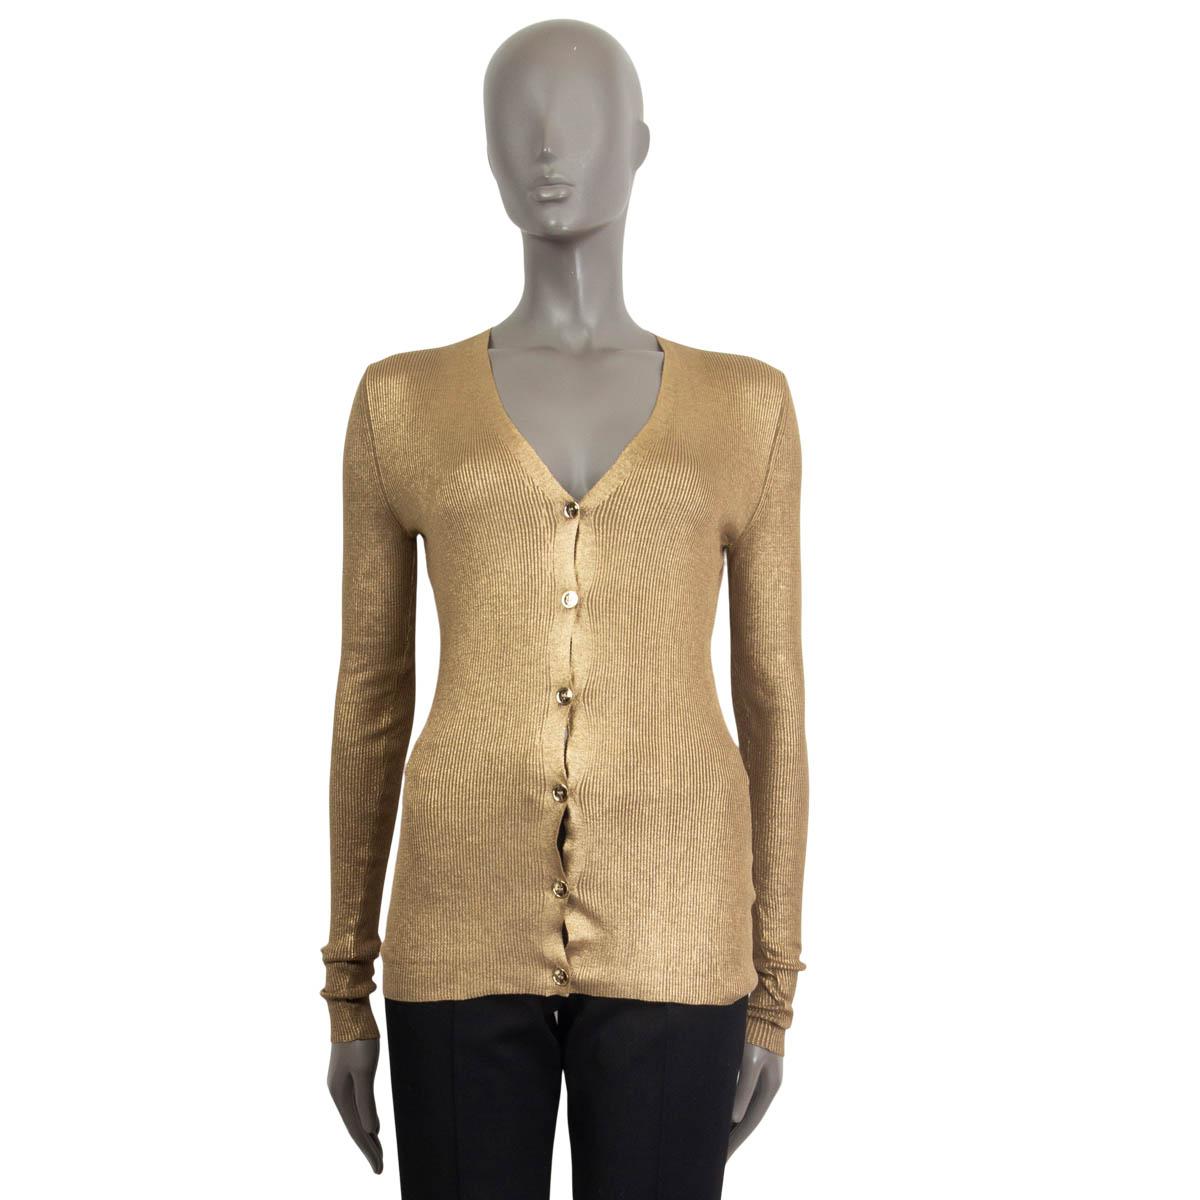 metallic gold cardigan sweater